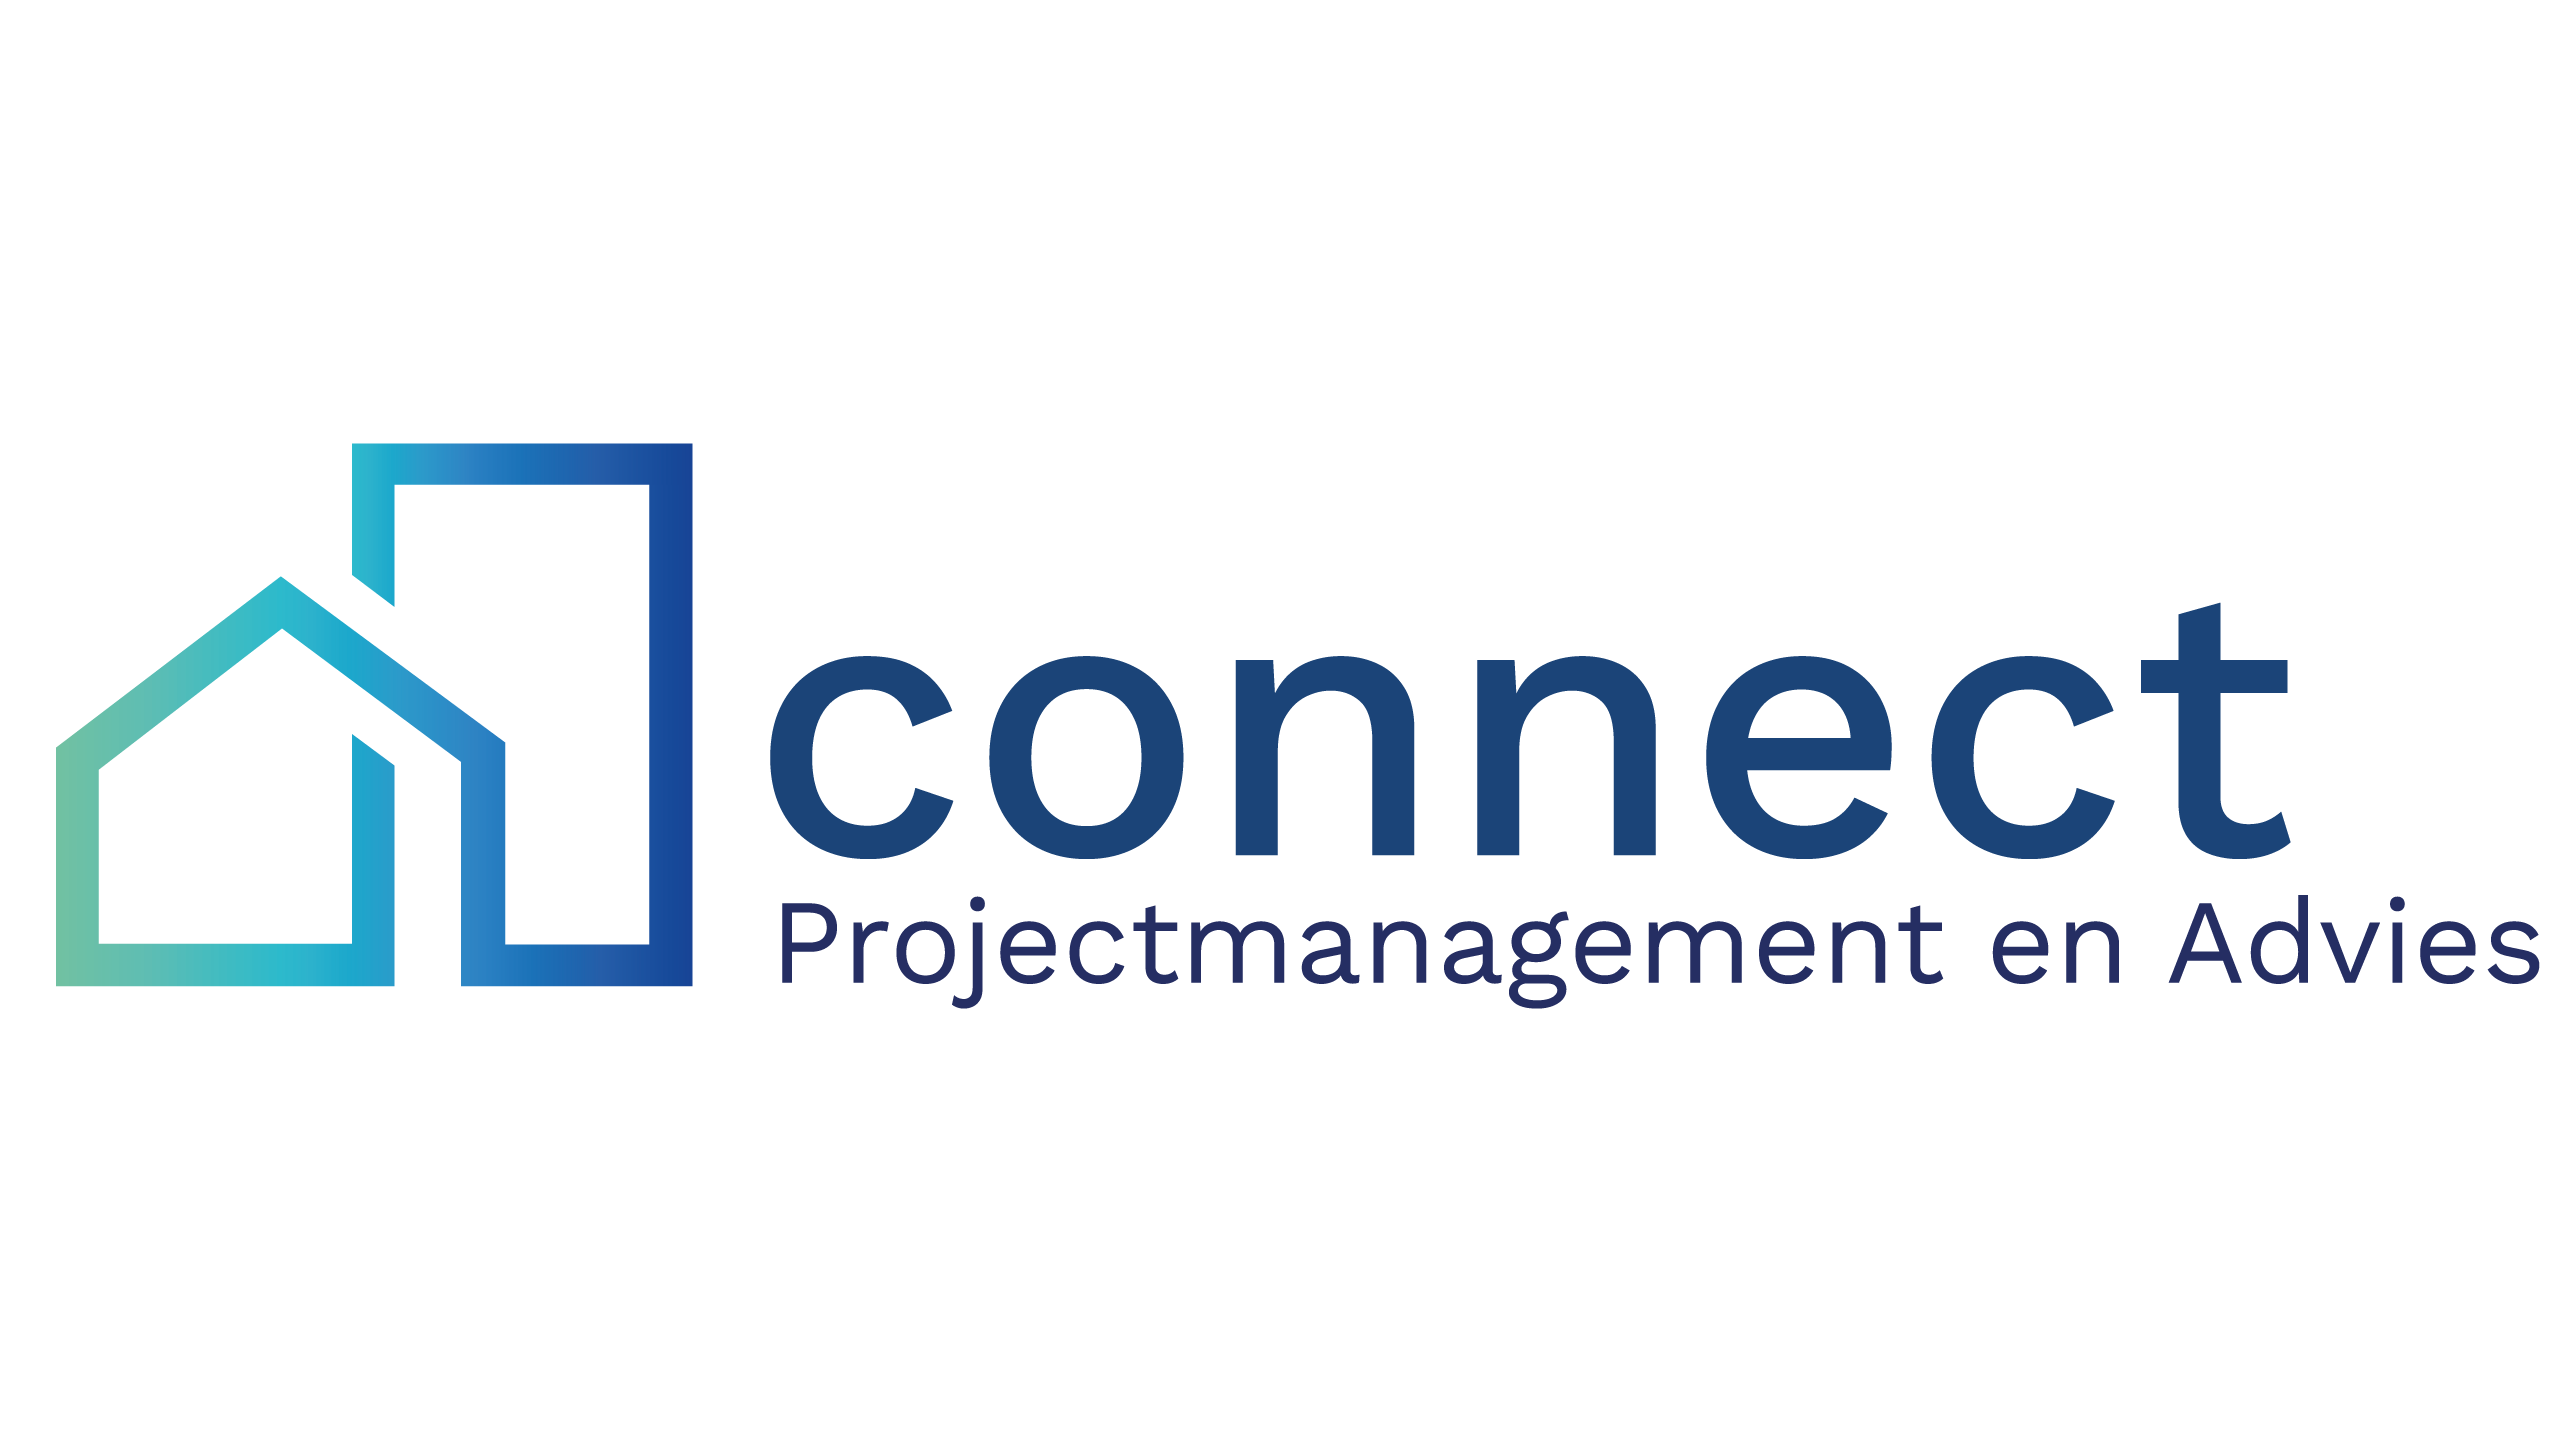 Connect Projectmanagement en Advies